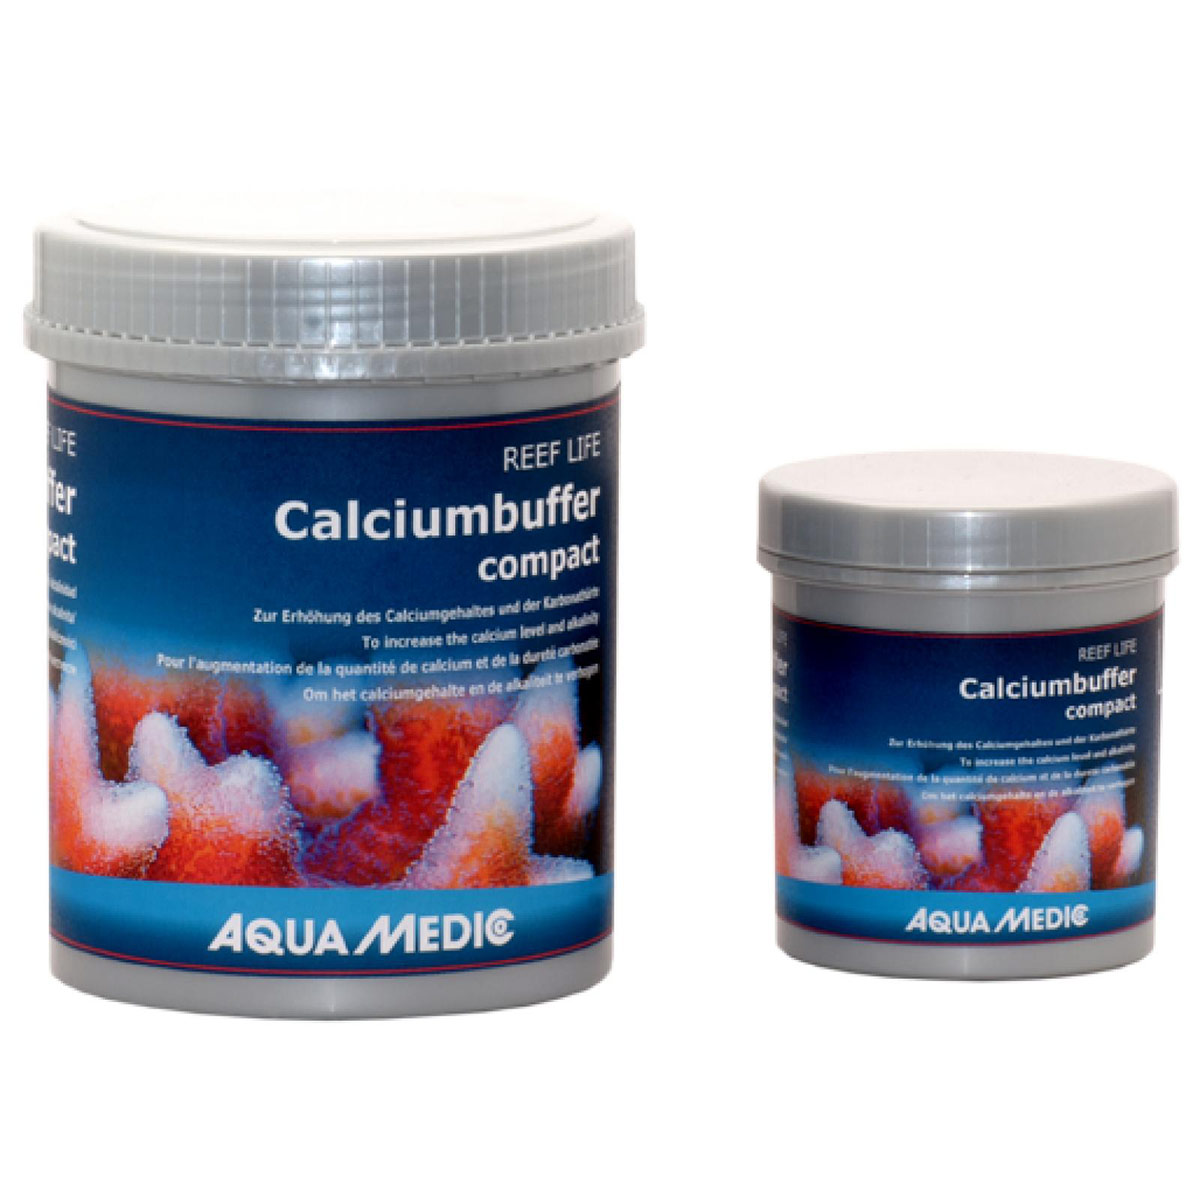 Aqua Medic REEF LIFE Calciumbuffer compact 800g/1000ml von Aqua Medic